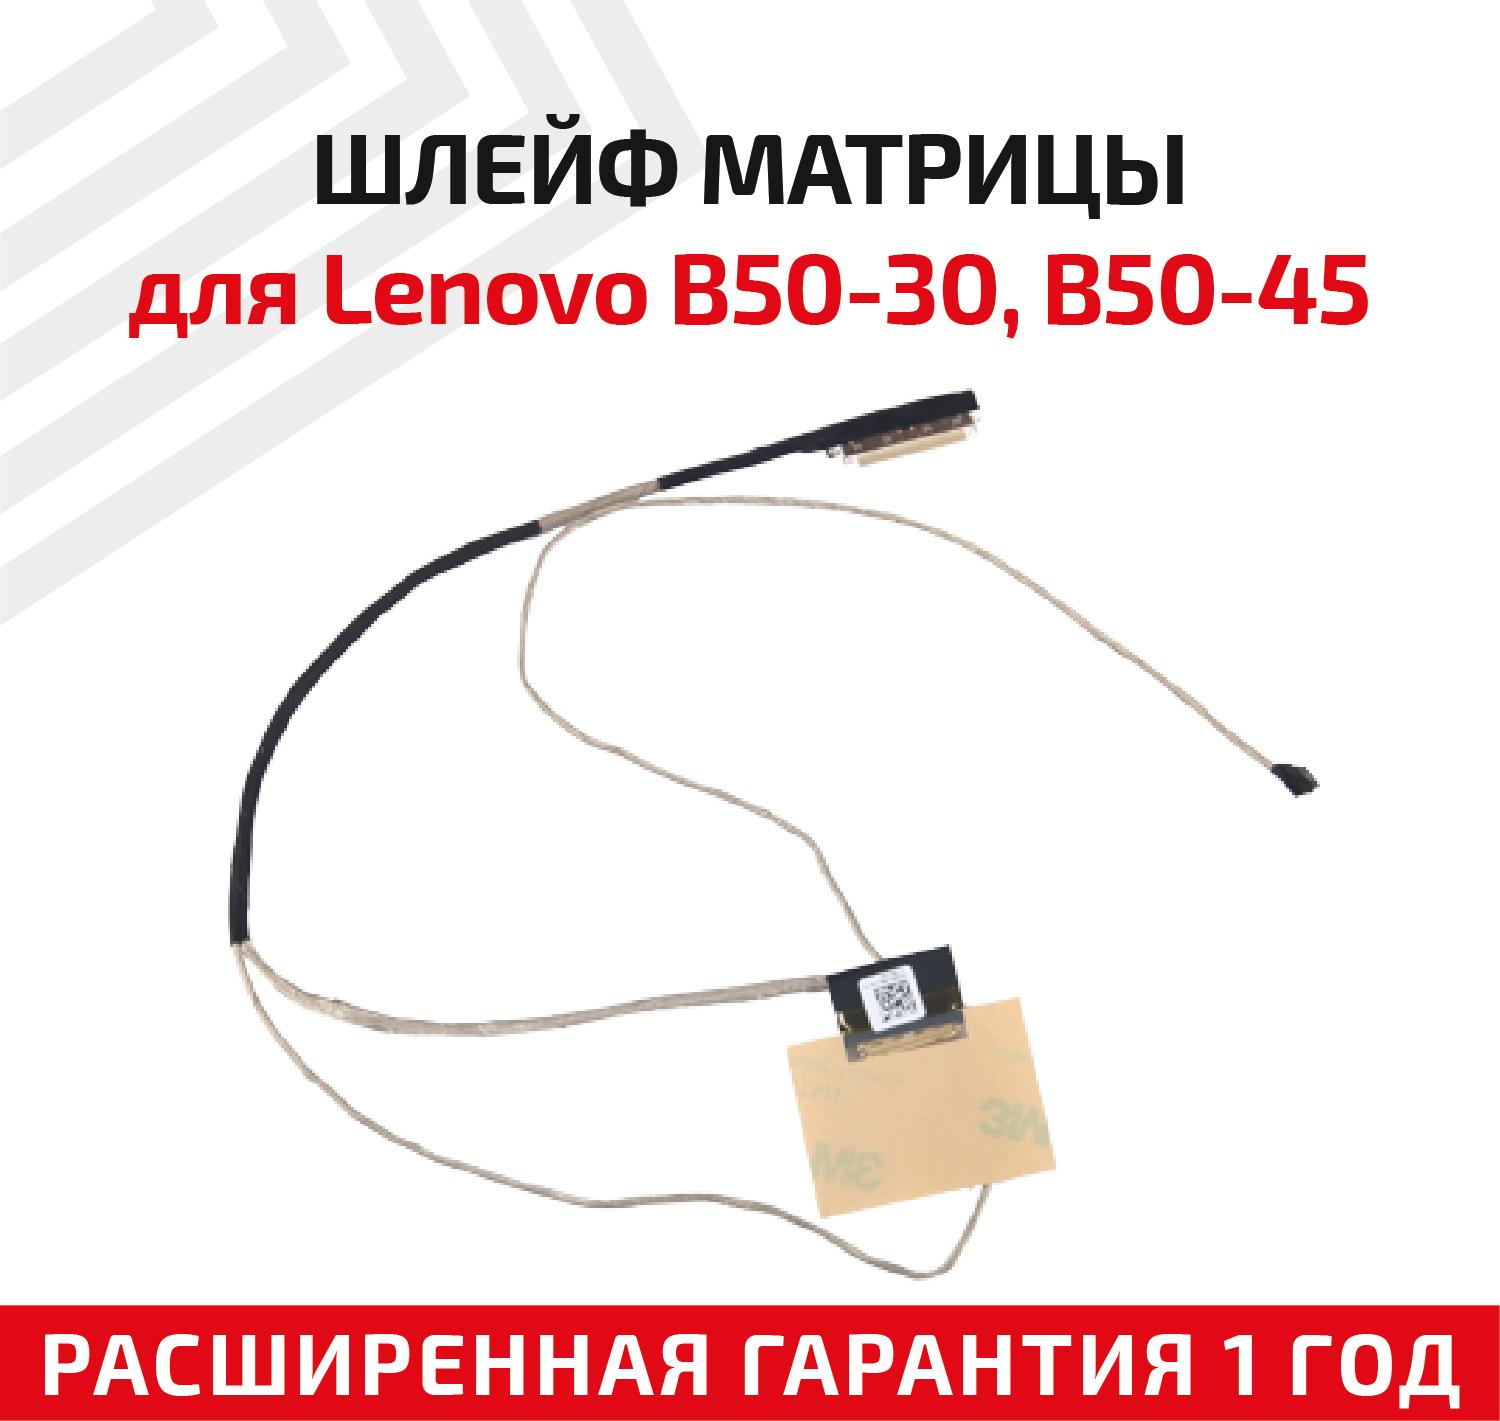 Шлейф матрицы для ноутбука Lenovo B50-30, B50-45, B50-70, B50-75